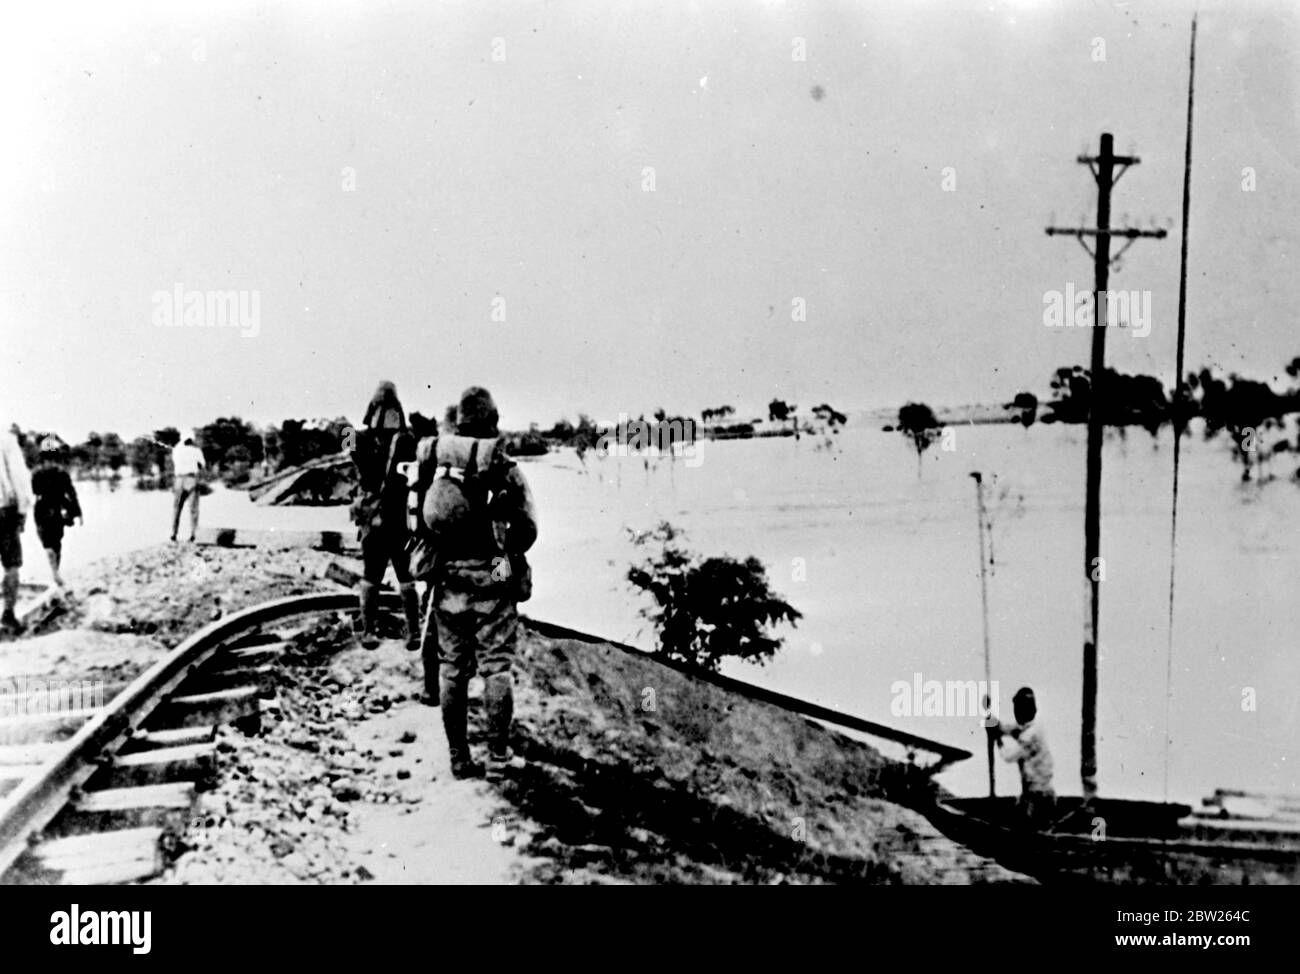 Les inondations de la rivière jaune endommagent le chemin de fer de Lunghai. Le chemin de fer Lunghai, qui a été le centre des combats entre les forces chinoises et japonaises, a été endommagé par les inondations de la rivière jaune qui ont inondé de vastes zones, entraînant la mort et la destruction en Chine souffre déjà des millions de personnes. Expositions de photos, soldats observant les dommages causés par les inondations de la rivière jaune au chemin de fer de Lunghai près de Kaifeng. 13 juillet 1938 Banque D'Images